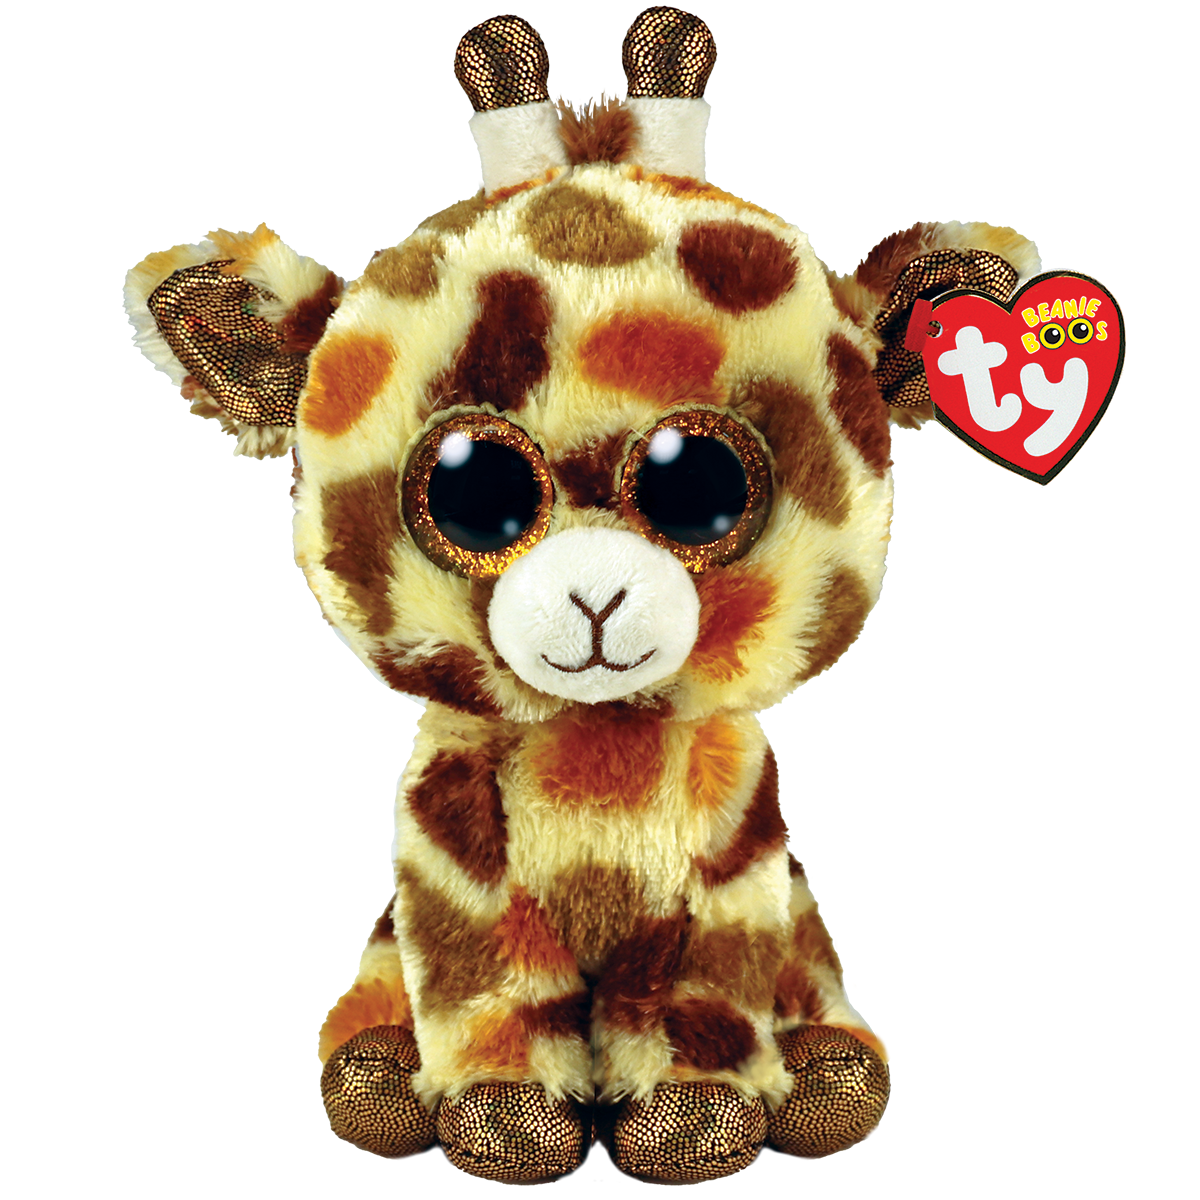 Ty - peluche - beanie boos - giraffa - stilts - giallo e marrone - peluche con zampe e occhioni glitter dorati - il morbido pupazzo con gli occhi grandi scintillanti - 15 cm - 36394 - TY